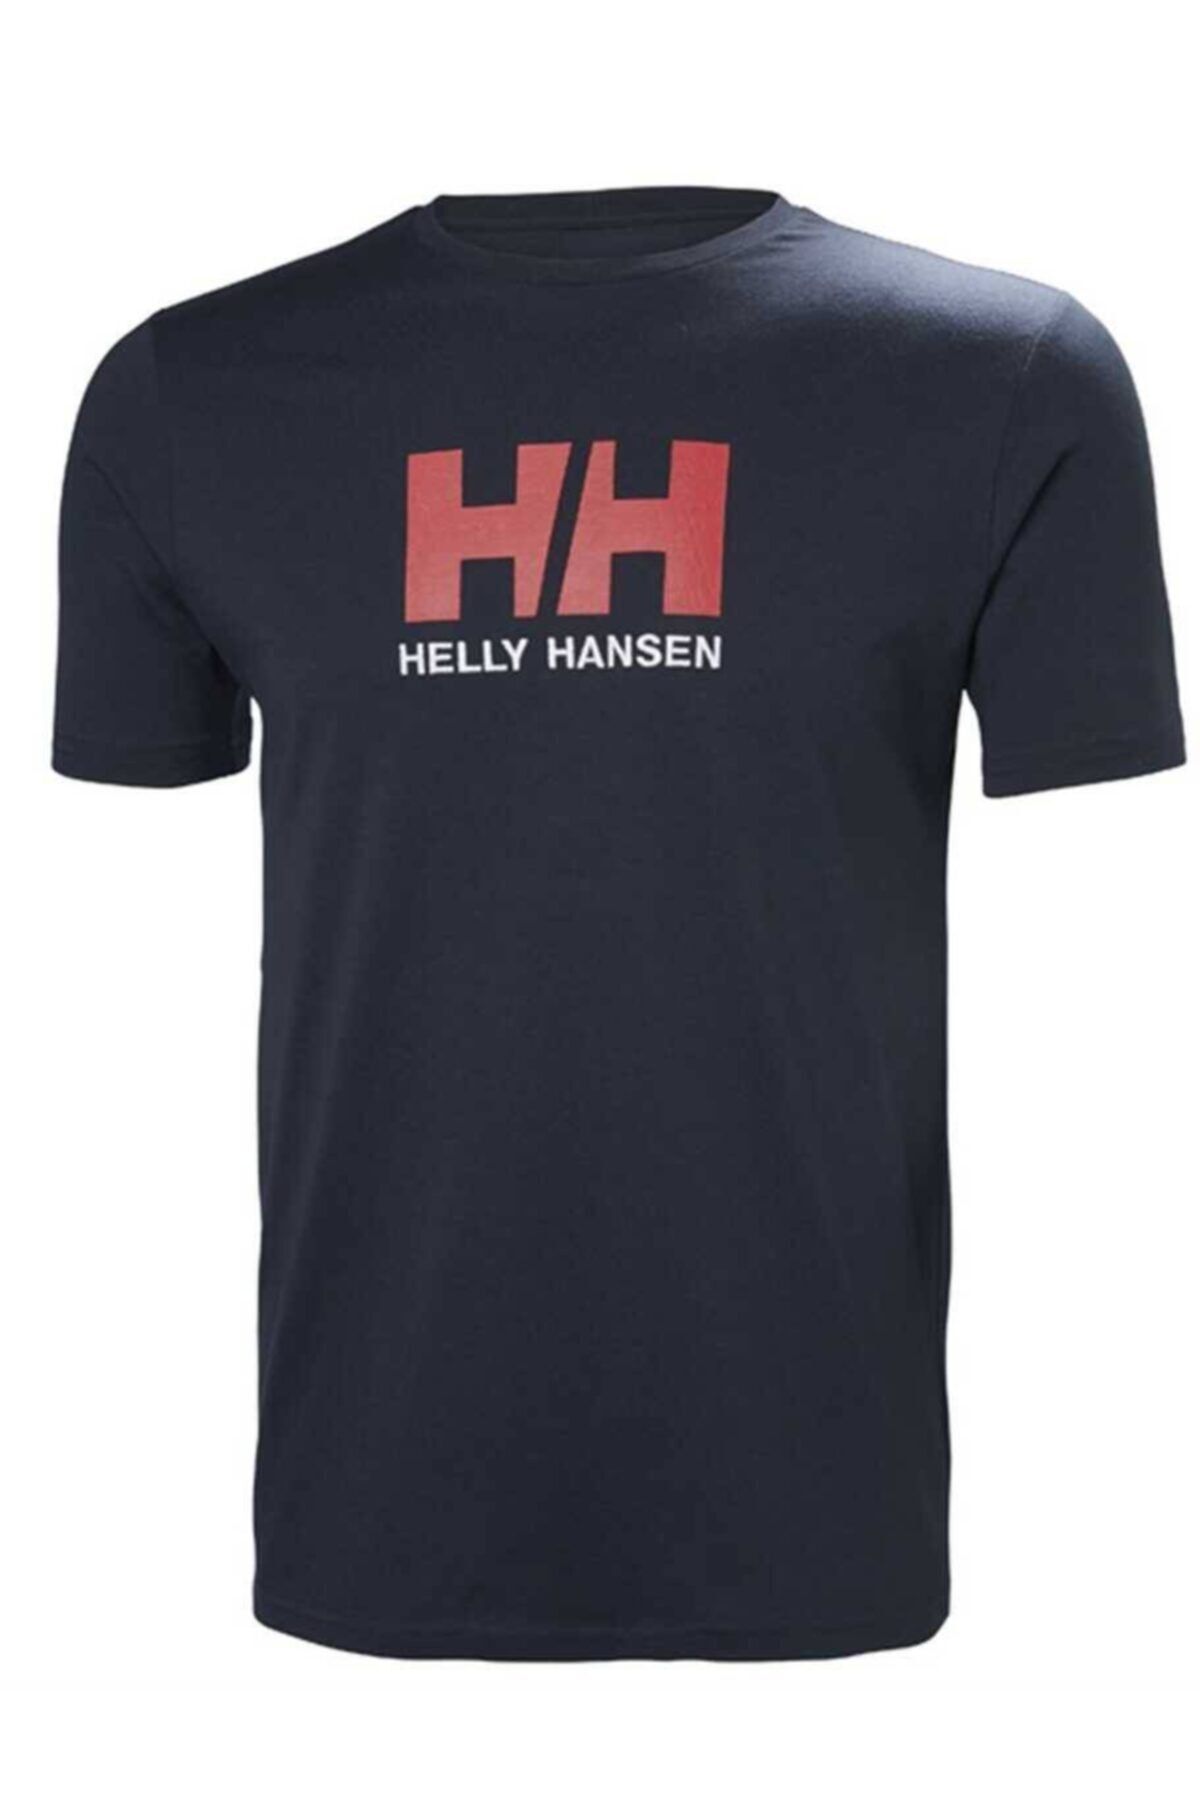 Helly Hansen Hh Logo Erkek T-shirt Lacivert